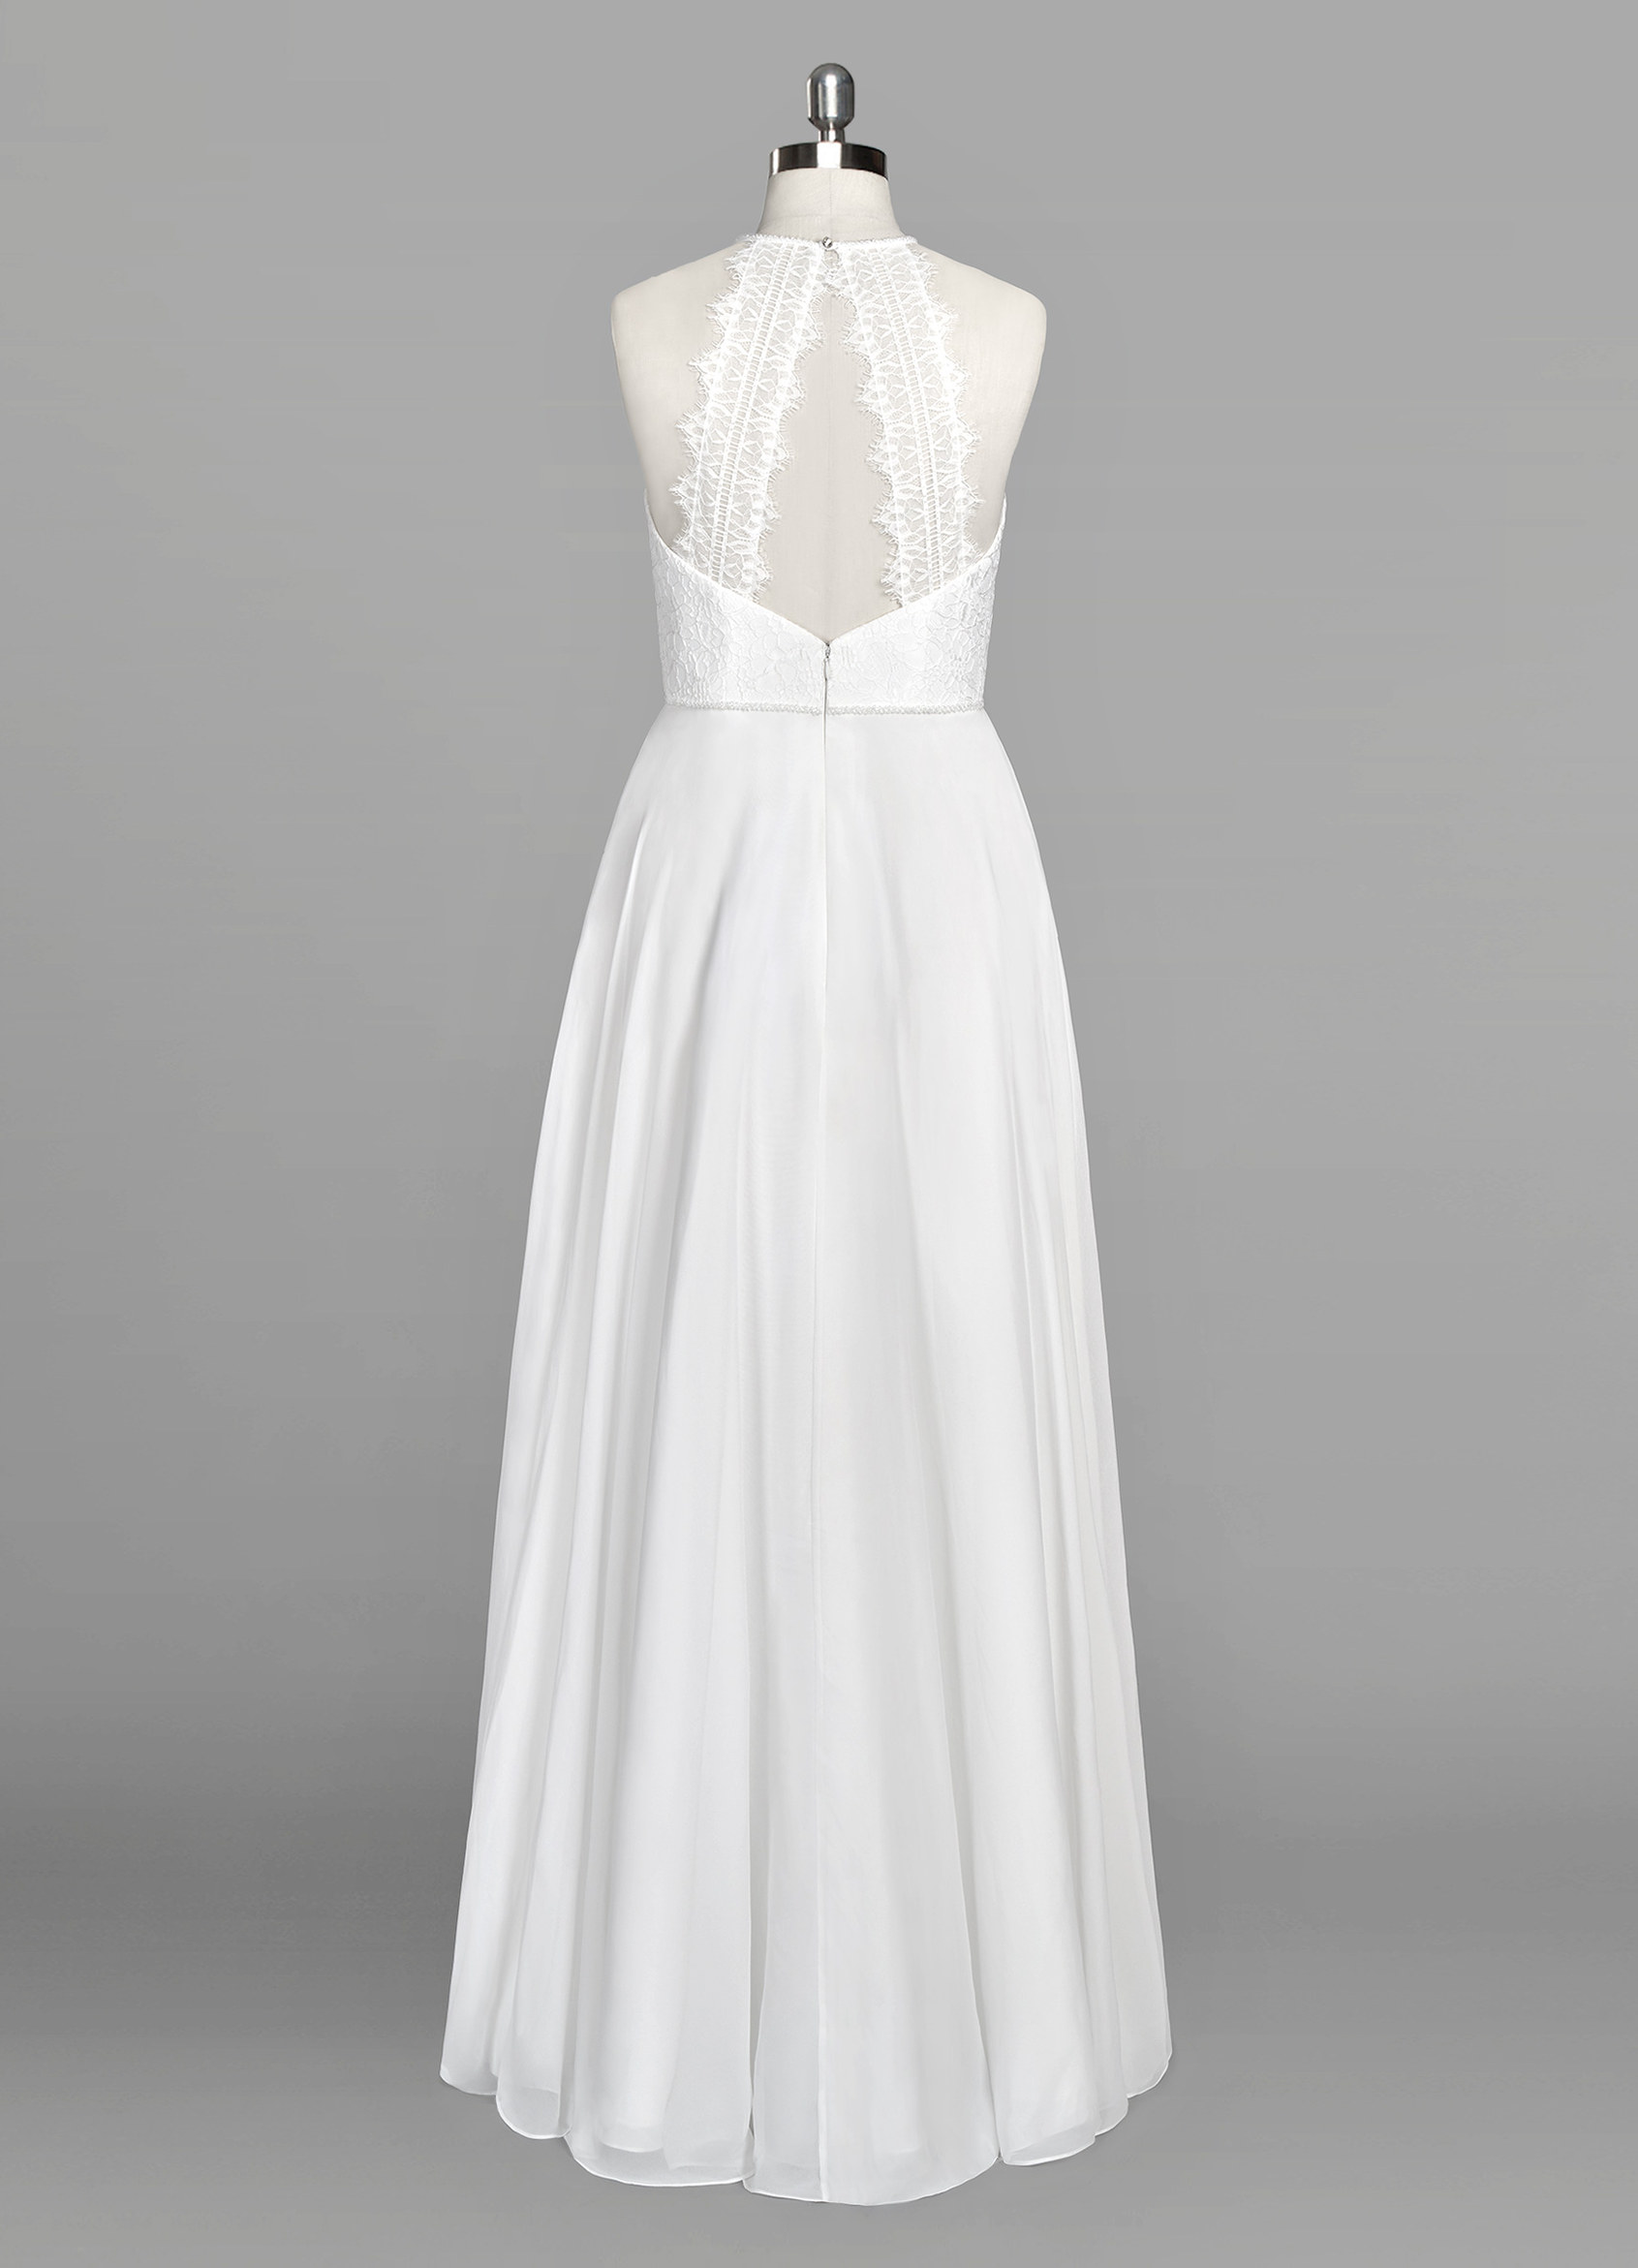 Azazie Gwendolyn BG Wedding Dress | Azazie